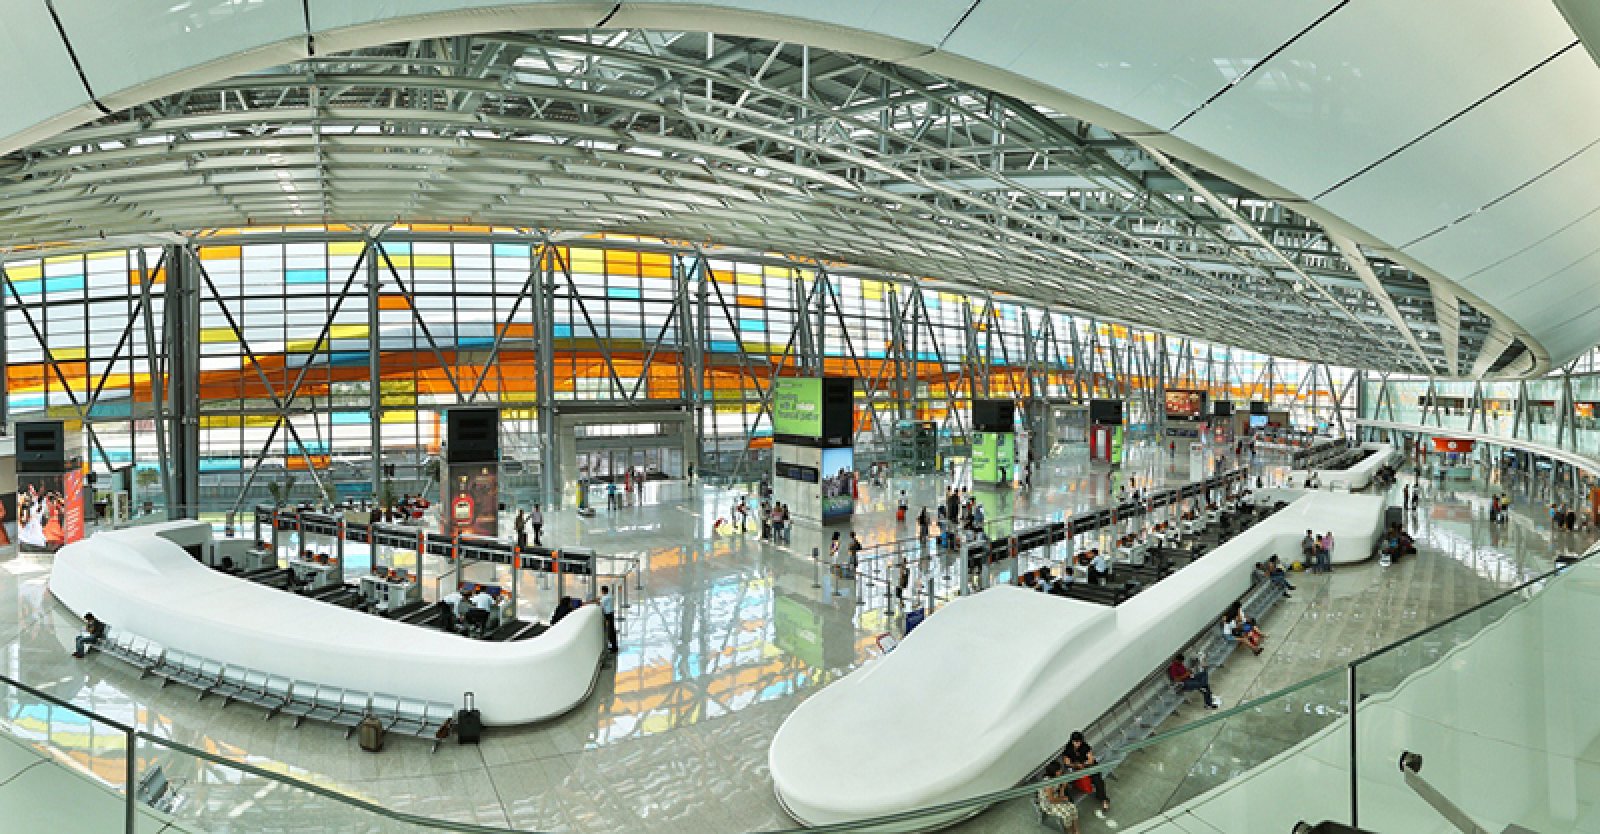 Yerevan Zvartnots International Airport, Armenia